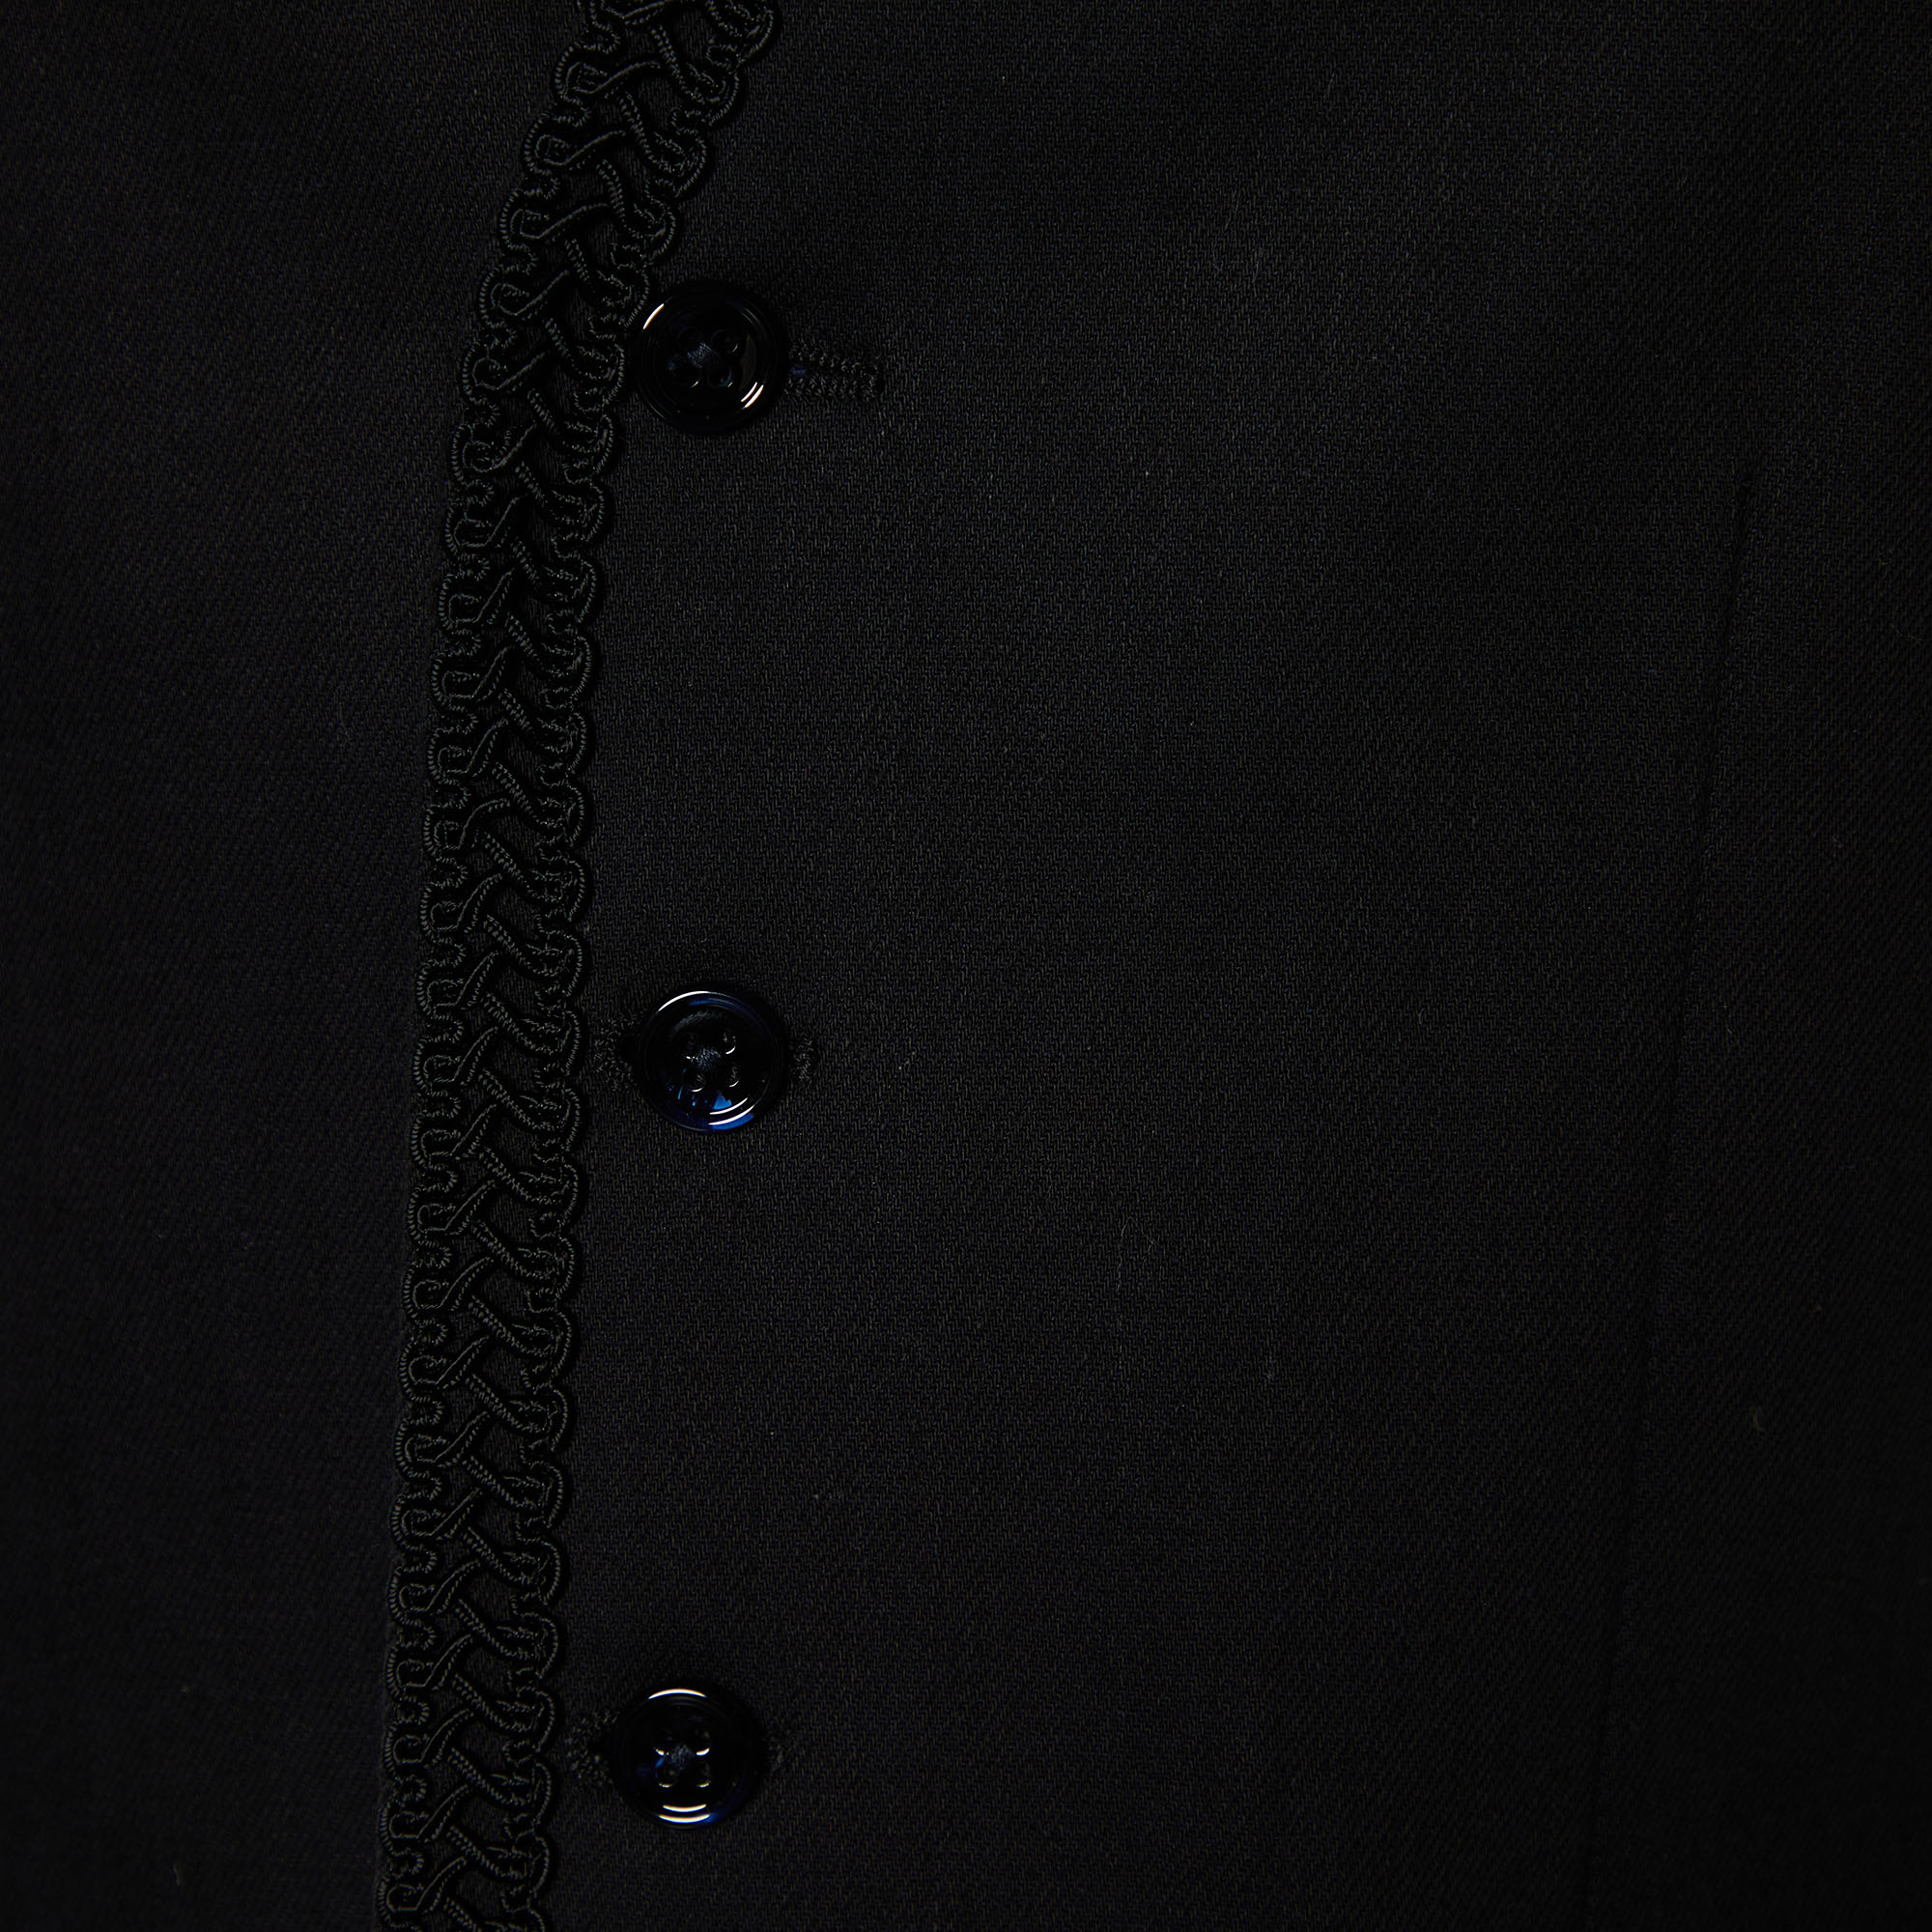 Dolce & Gabbana Black Cotton Trim Detail Vest M